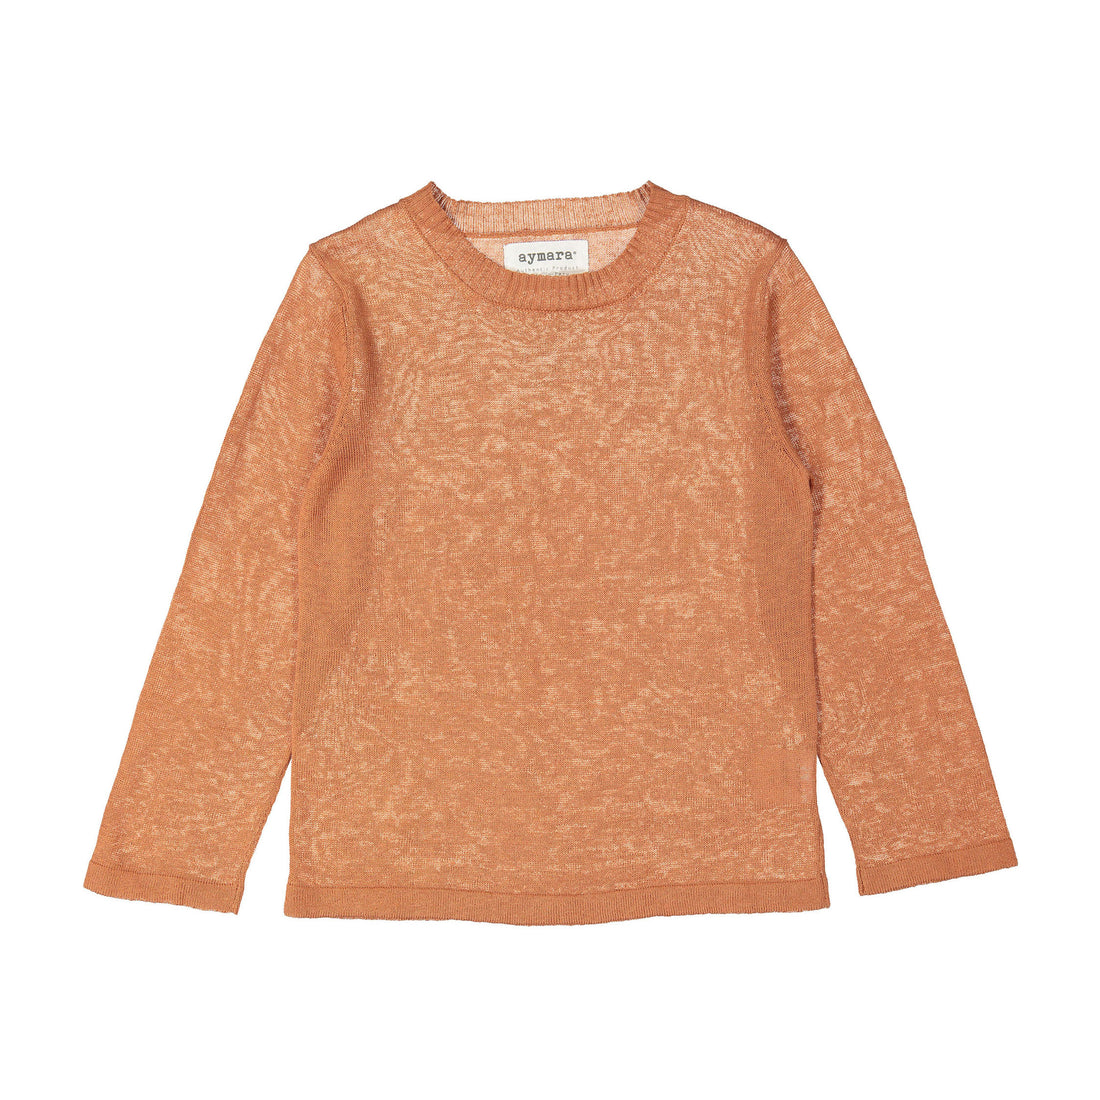 aymara Copper Rafa Sweater